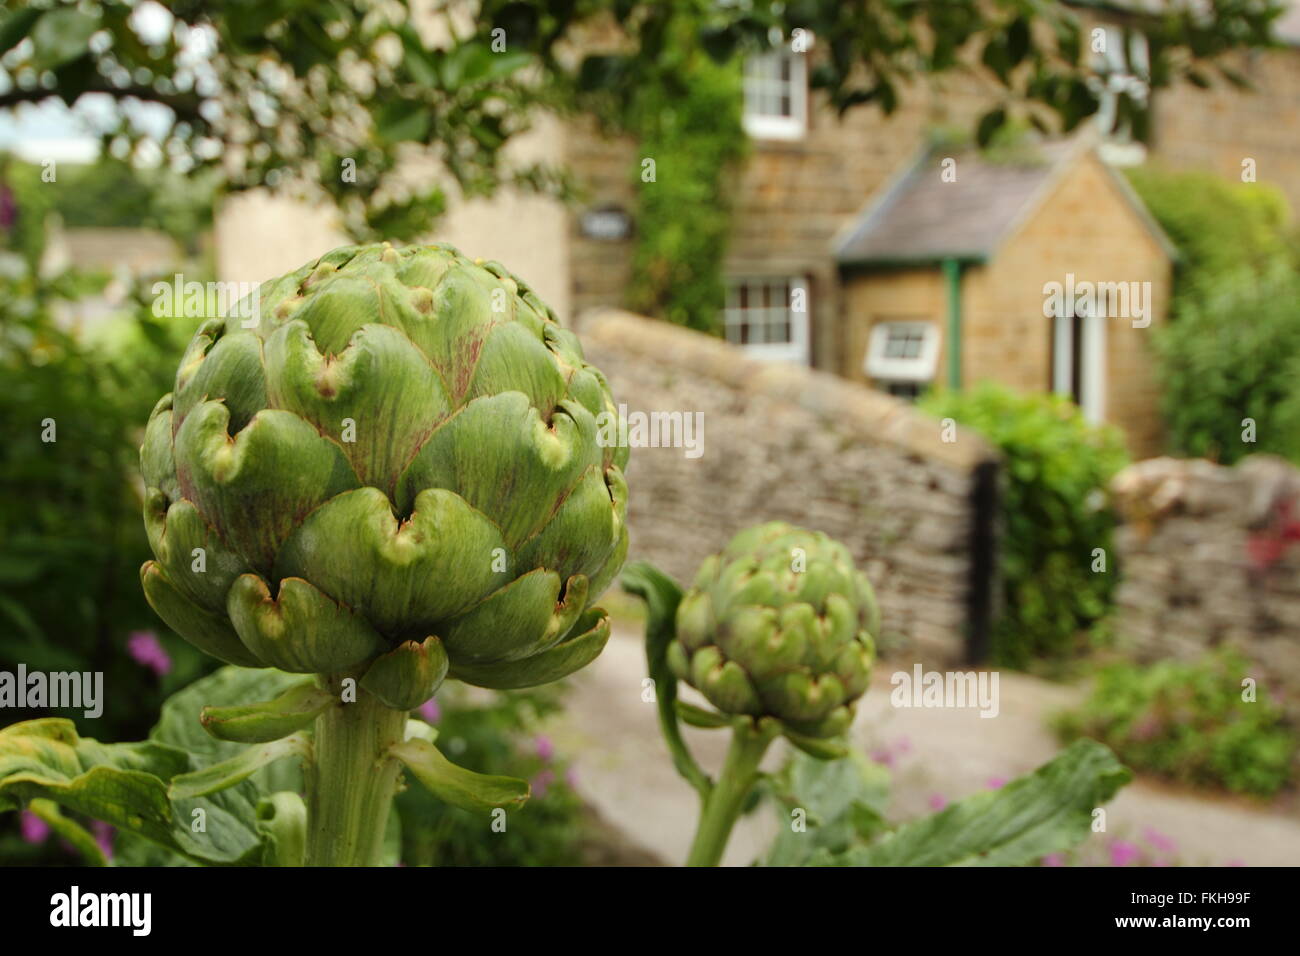 Un carciofo globe cresce in un giardino da un tradizionale cottage in pietra nel Parco Nazionale di Peak District,Derbyshire England Regno Unito Foto Stock